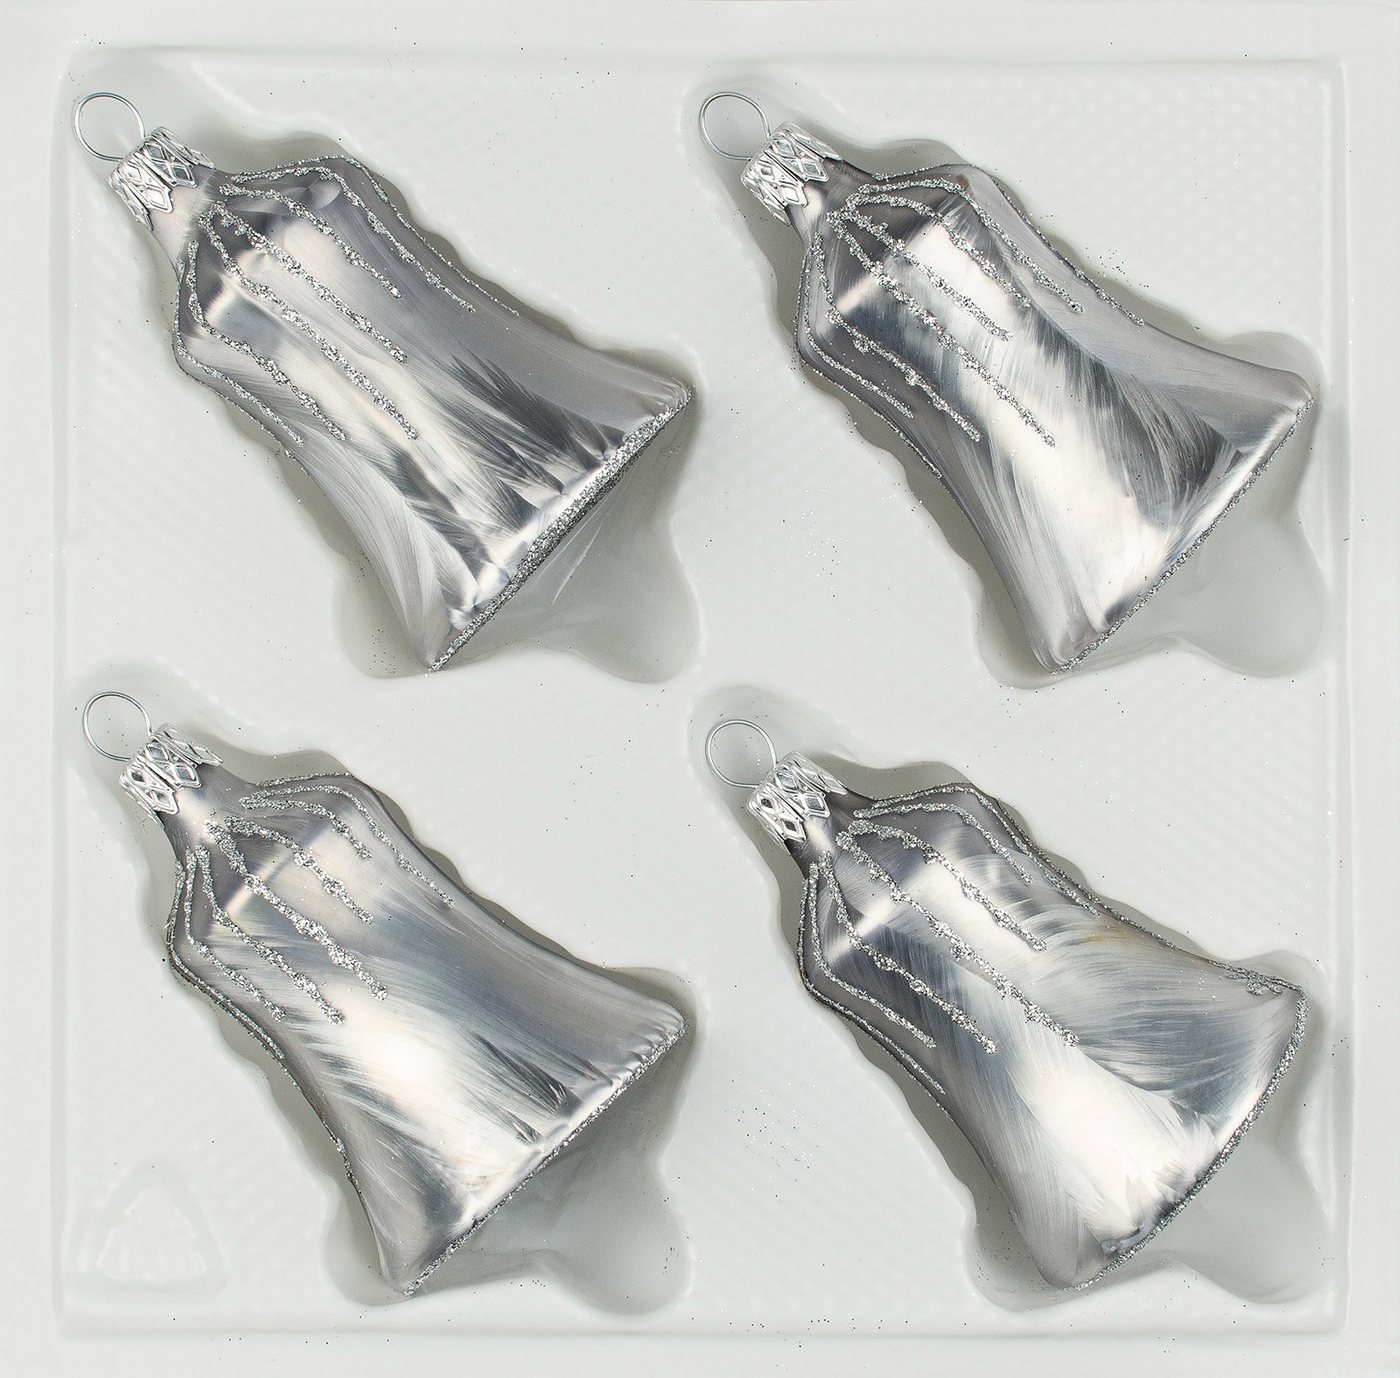 Navidacio Christbaumschmuck 4 tlg. Glas-Glocken Set in Ice Grau Silber" Regen" von Navidacio